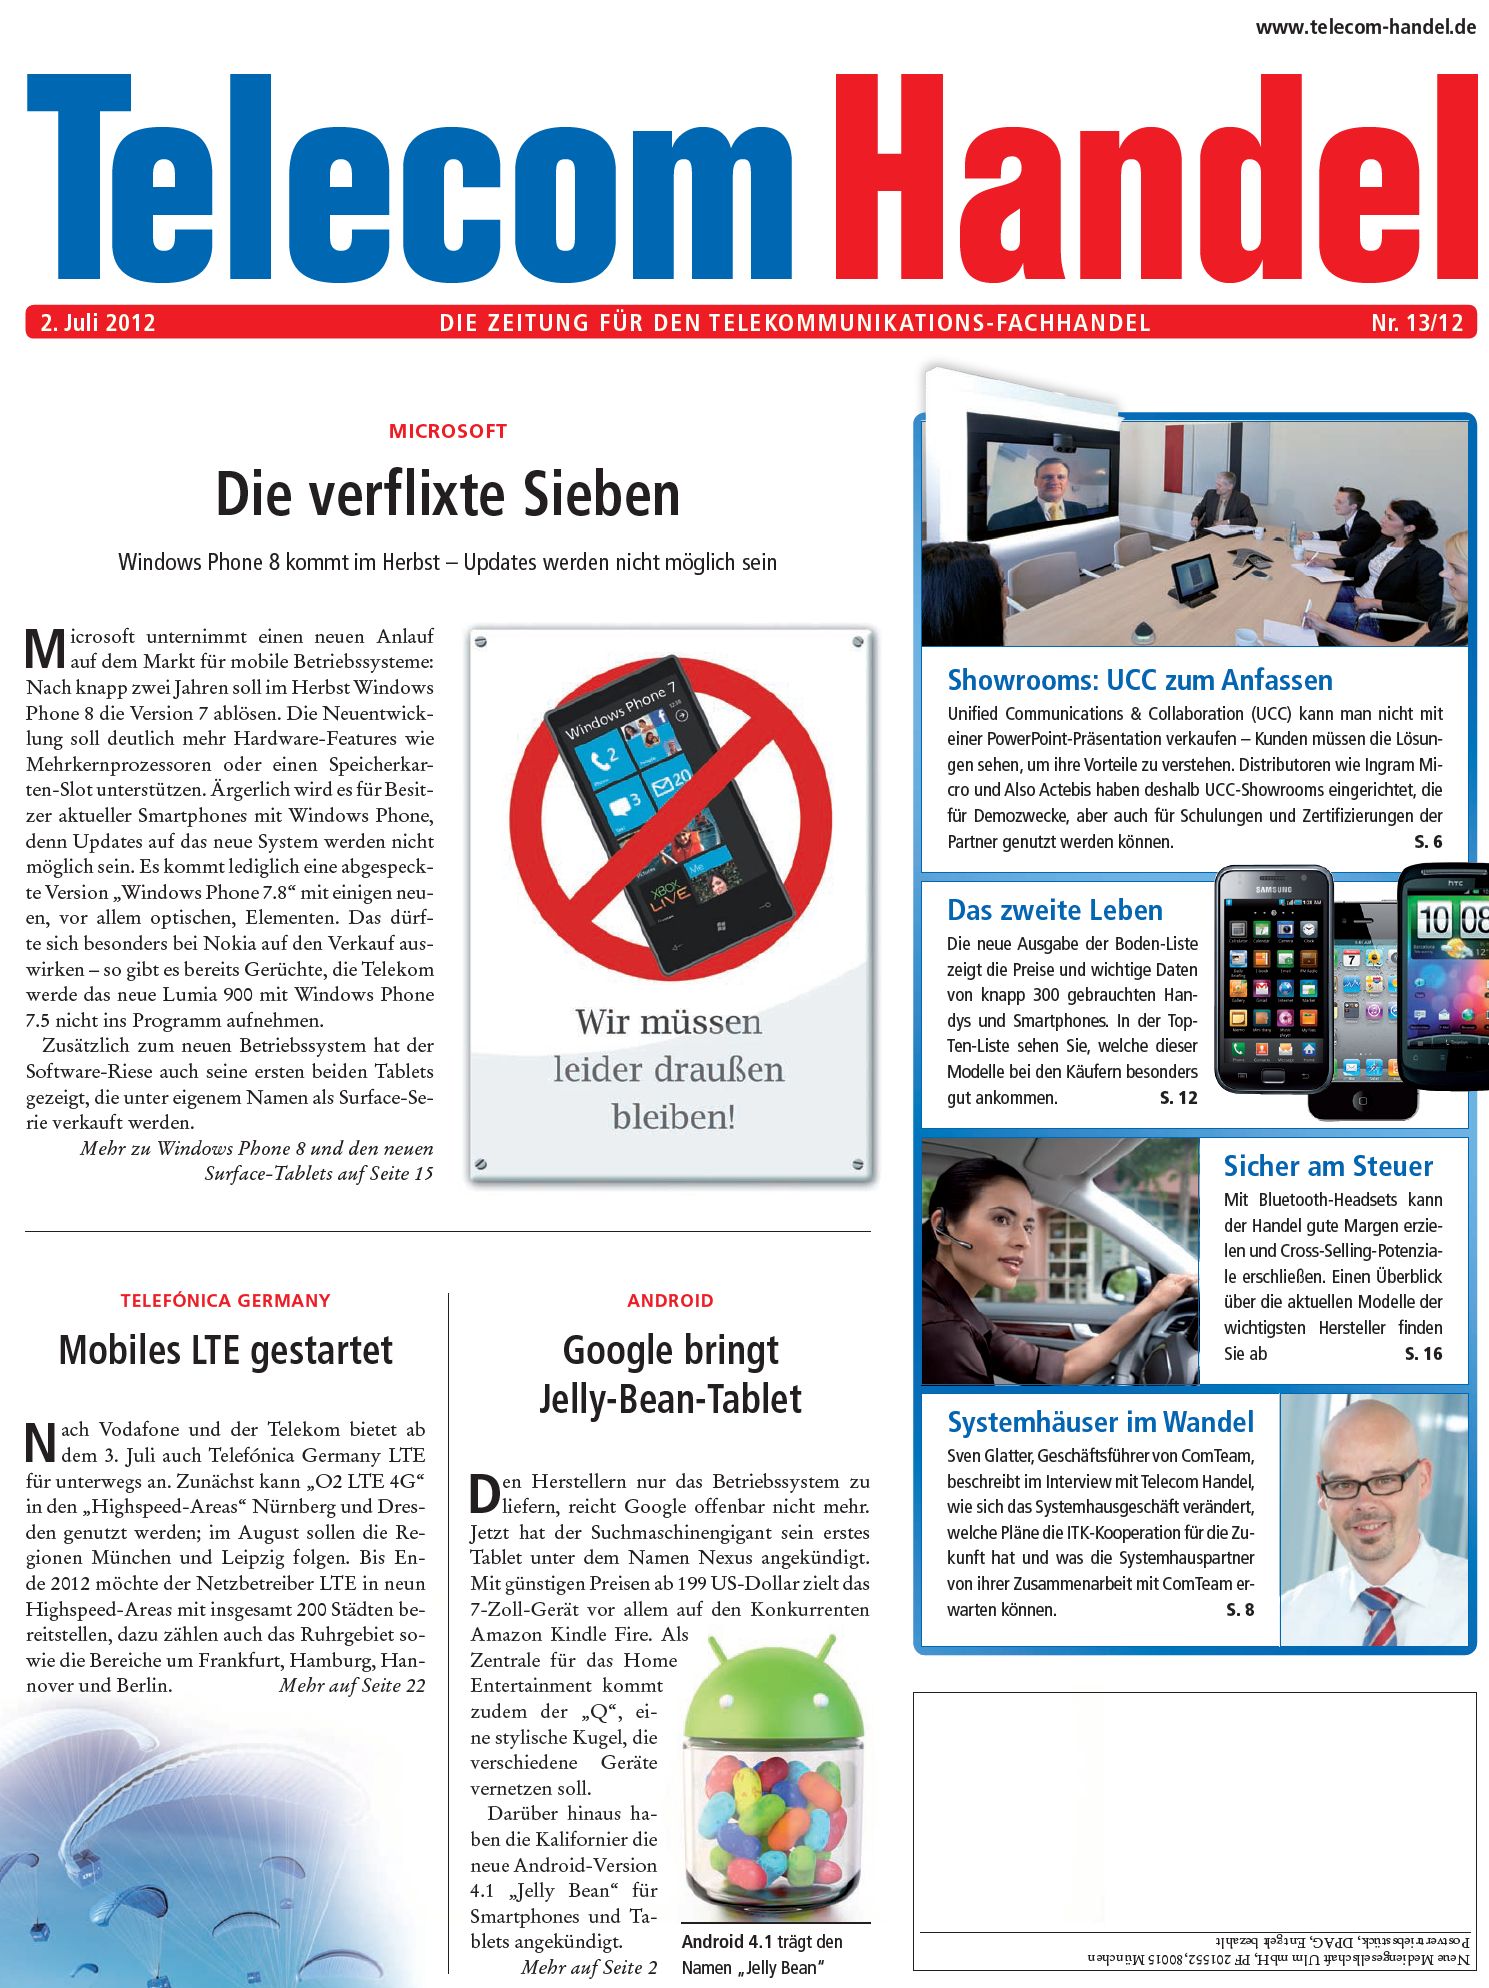 Telecom Handel Ausgabe 13/2012